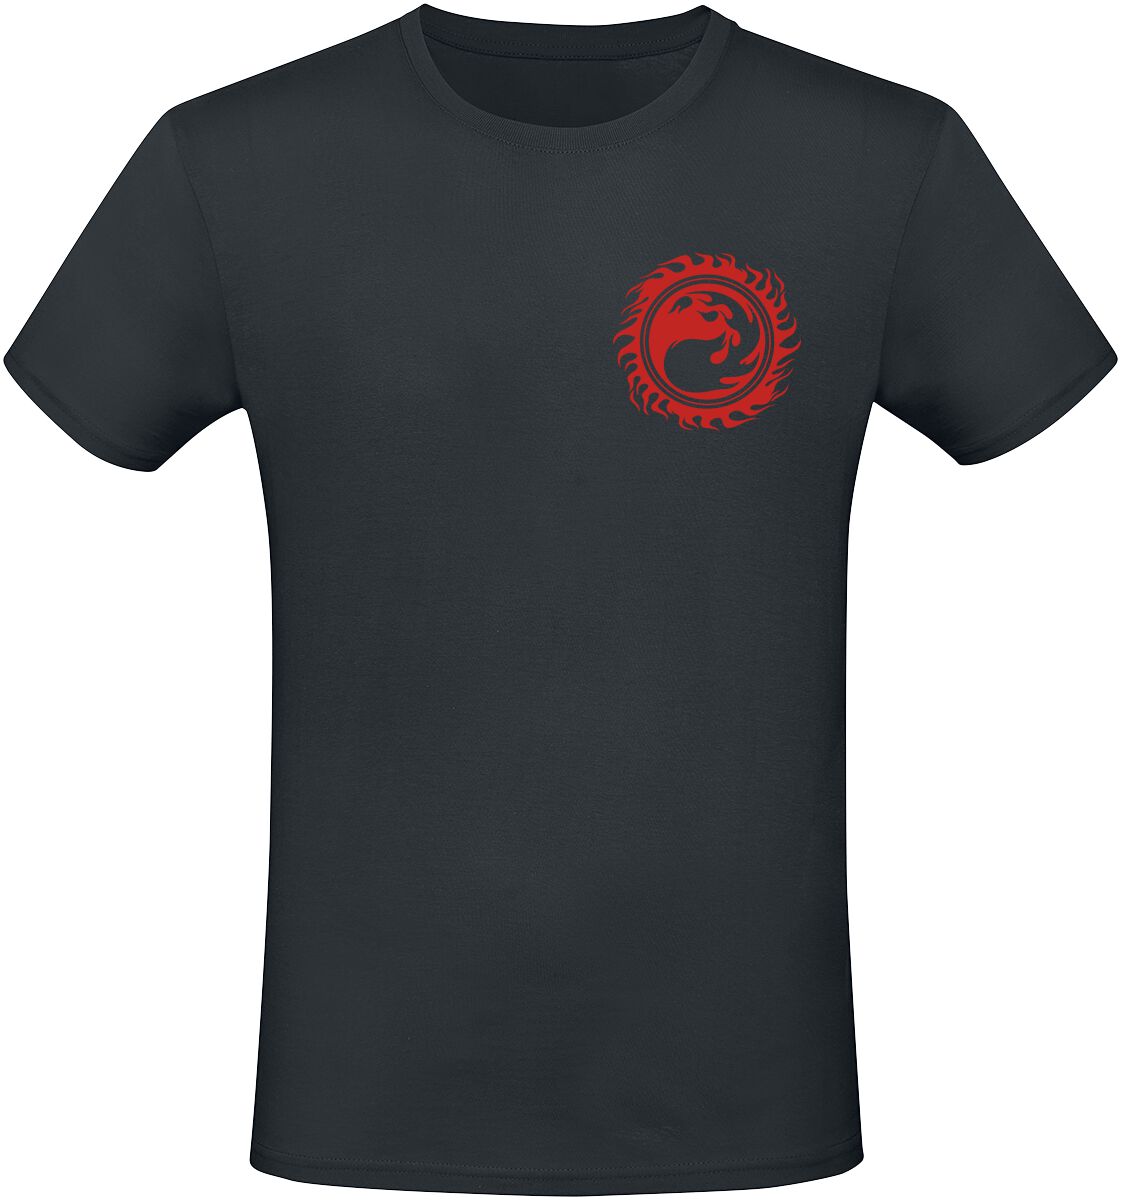 Magic: The Gathering - Gaming T-Shirt - Red Mana - S bis XXL - für Männer - Größe L - schwarz  - EMP exklusives Merchandise!